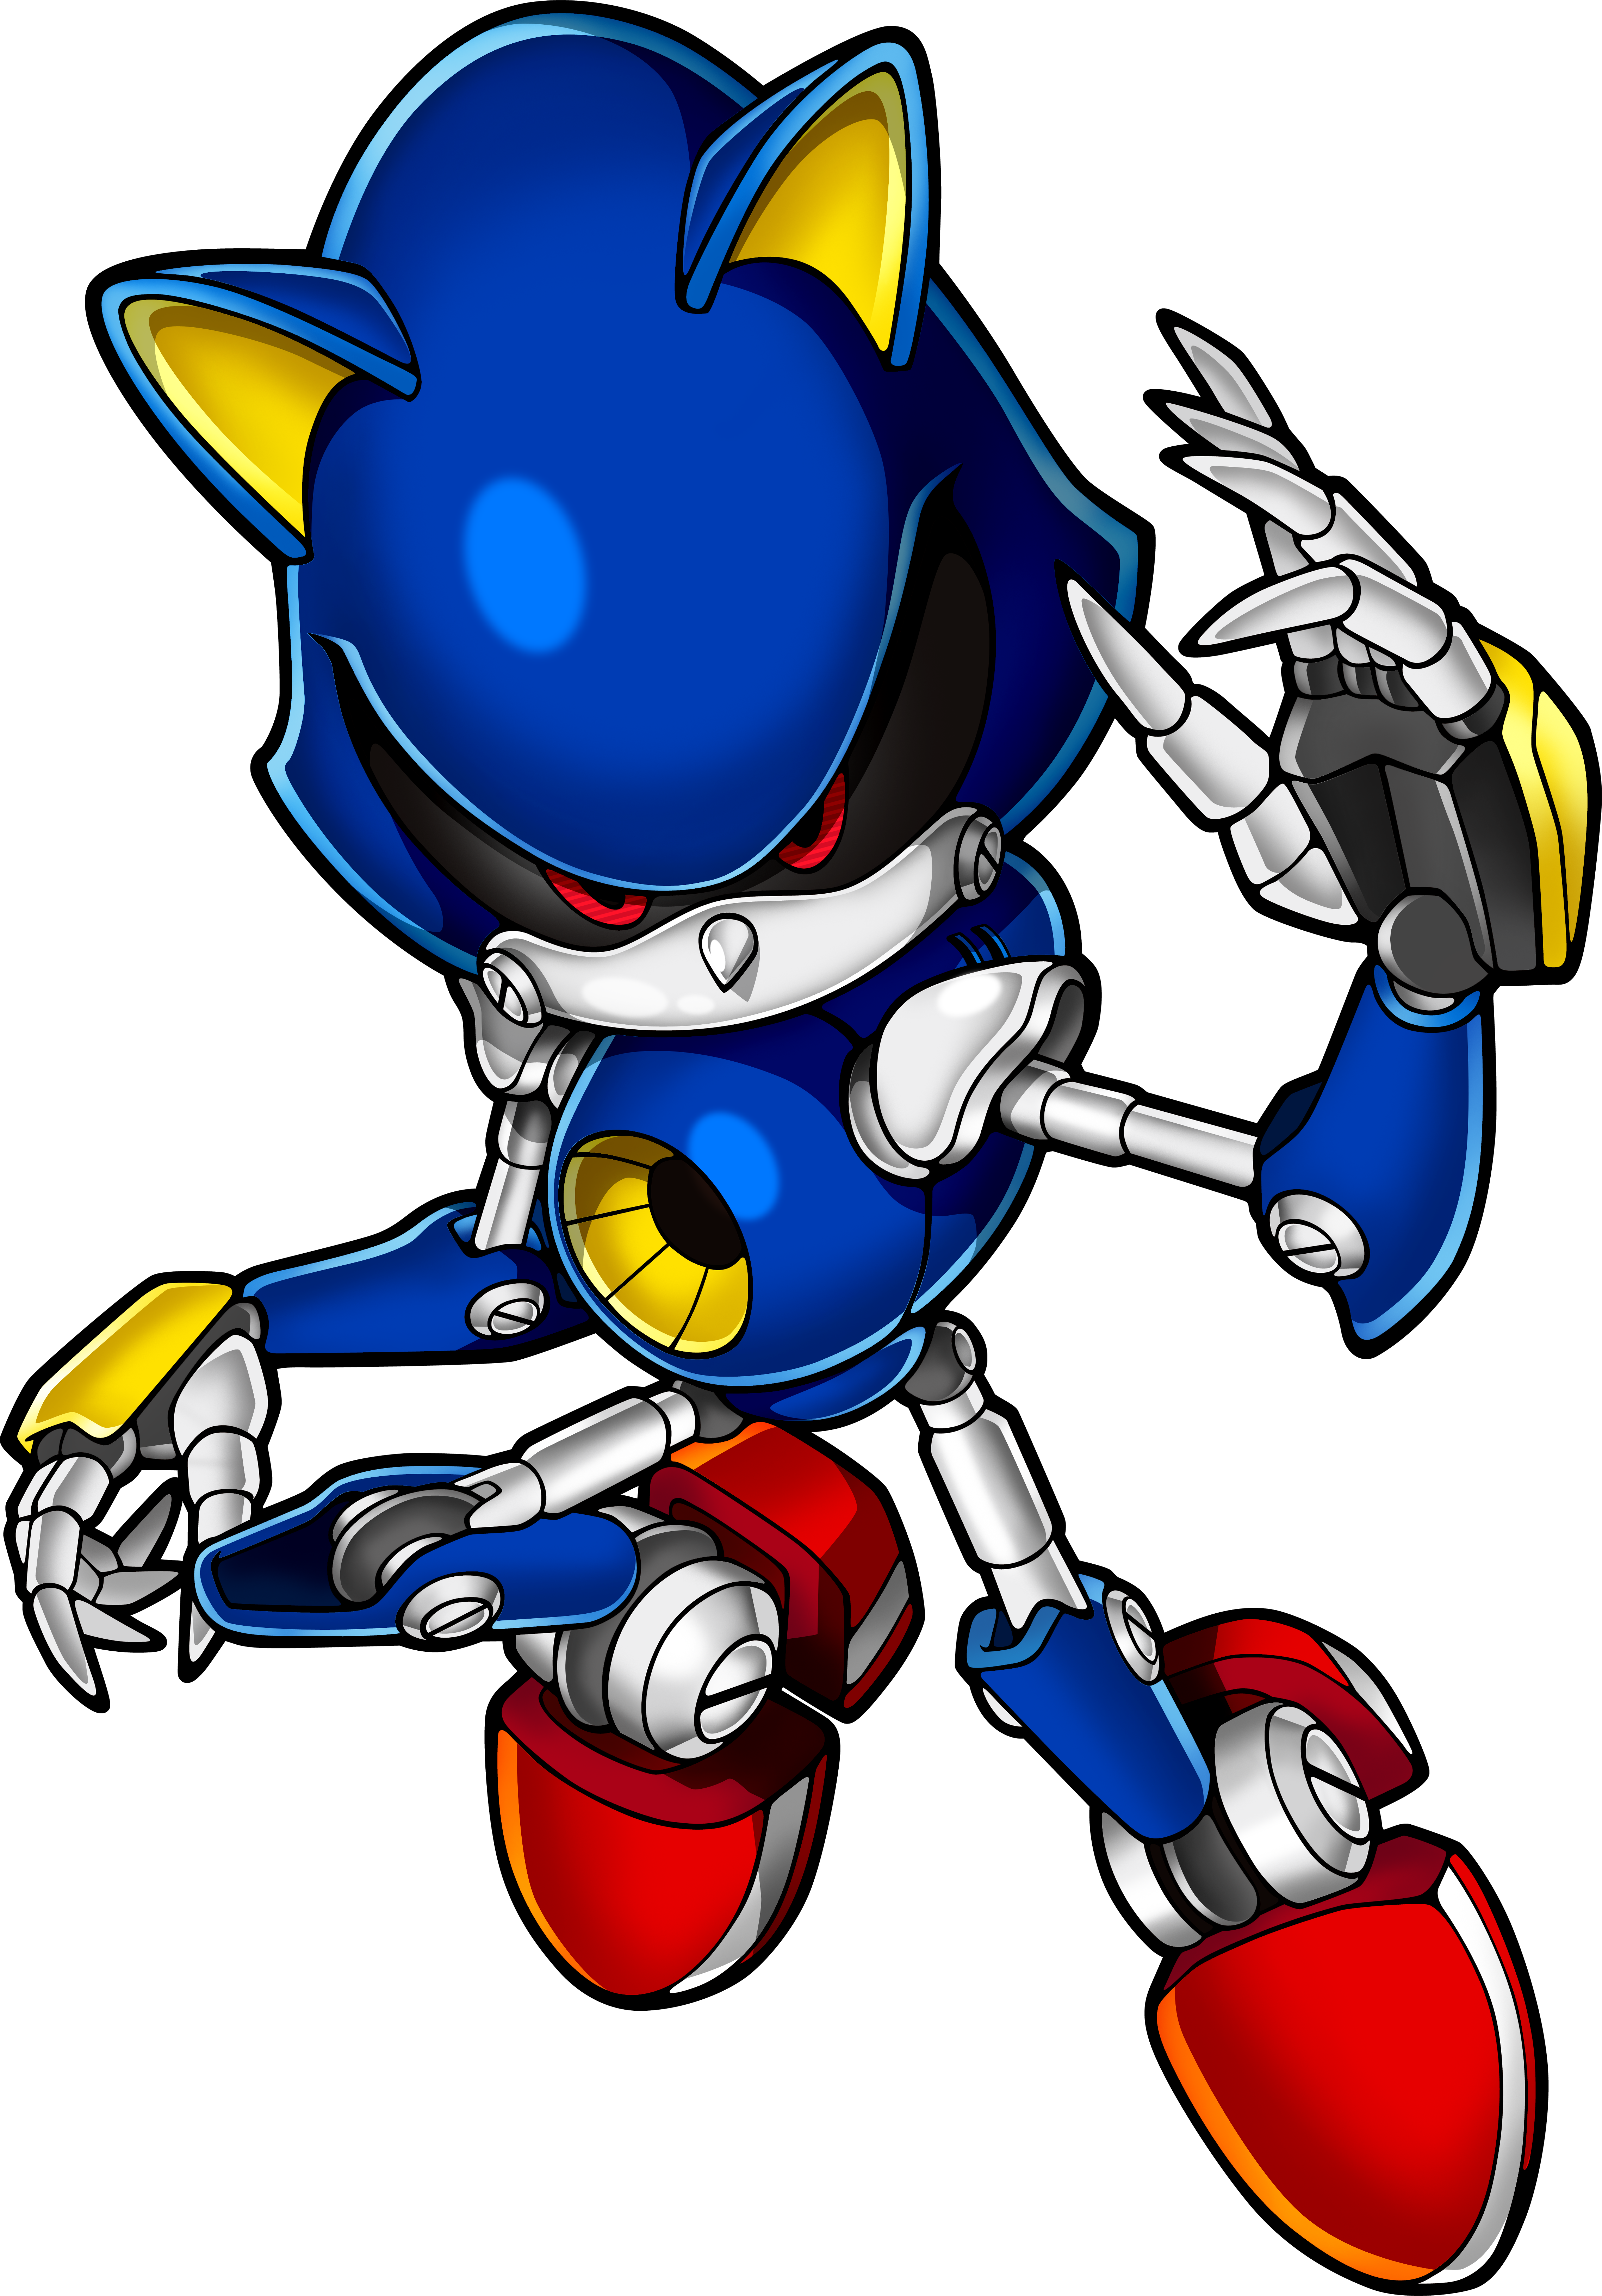 Happy Birthday, Metal Sonic!